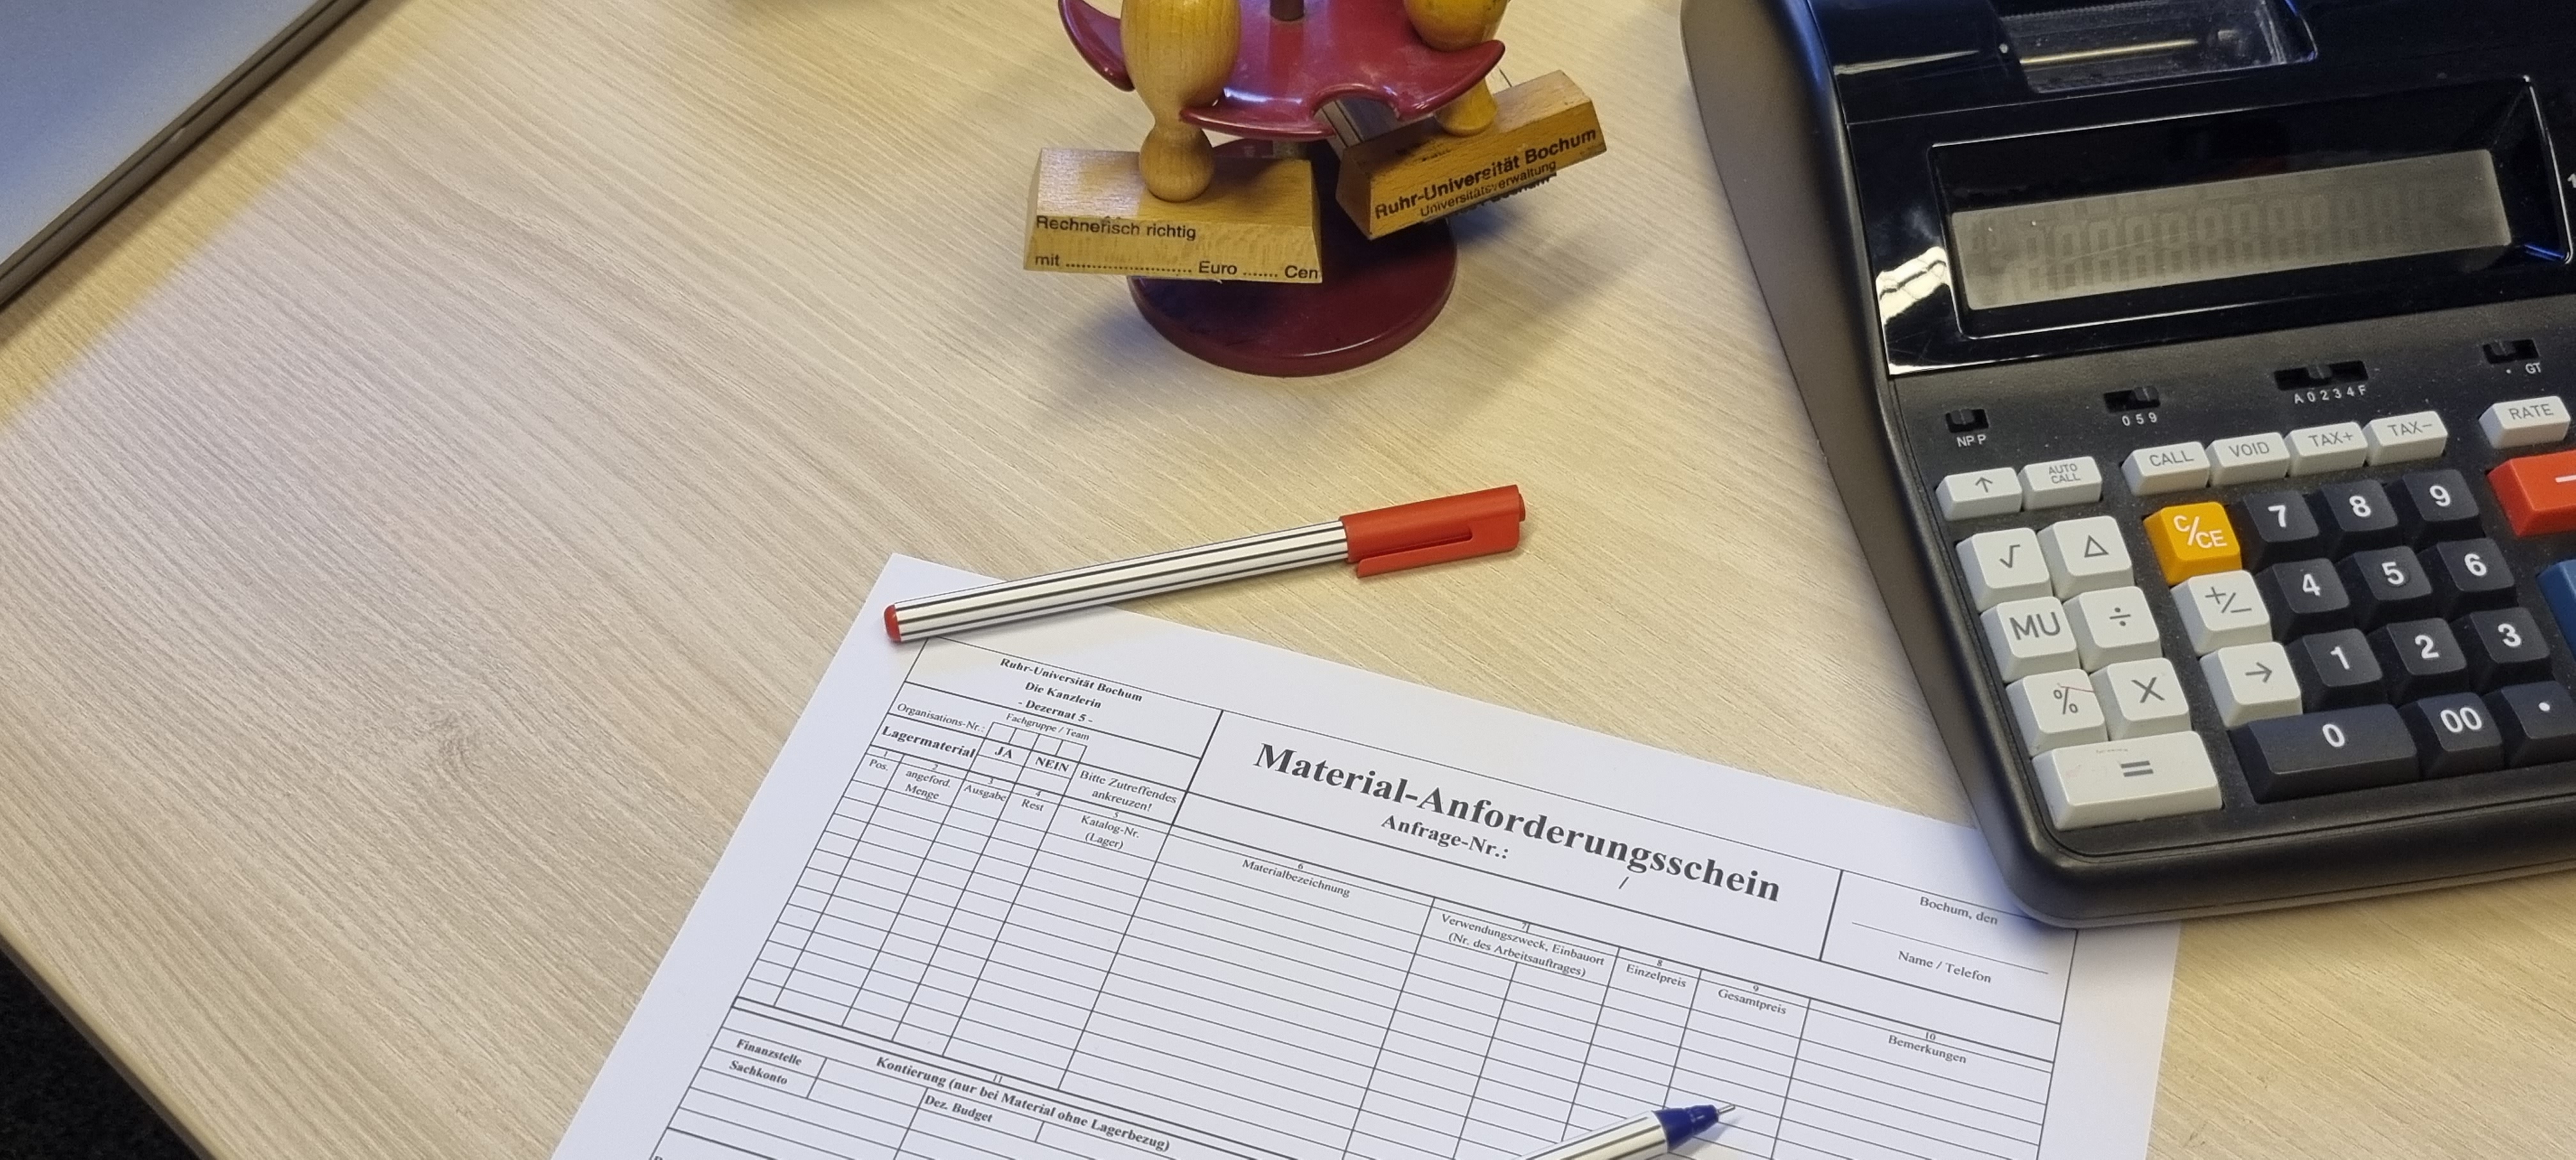 Material-Anforderungsschein auf Schreibtisch.